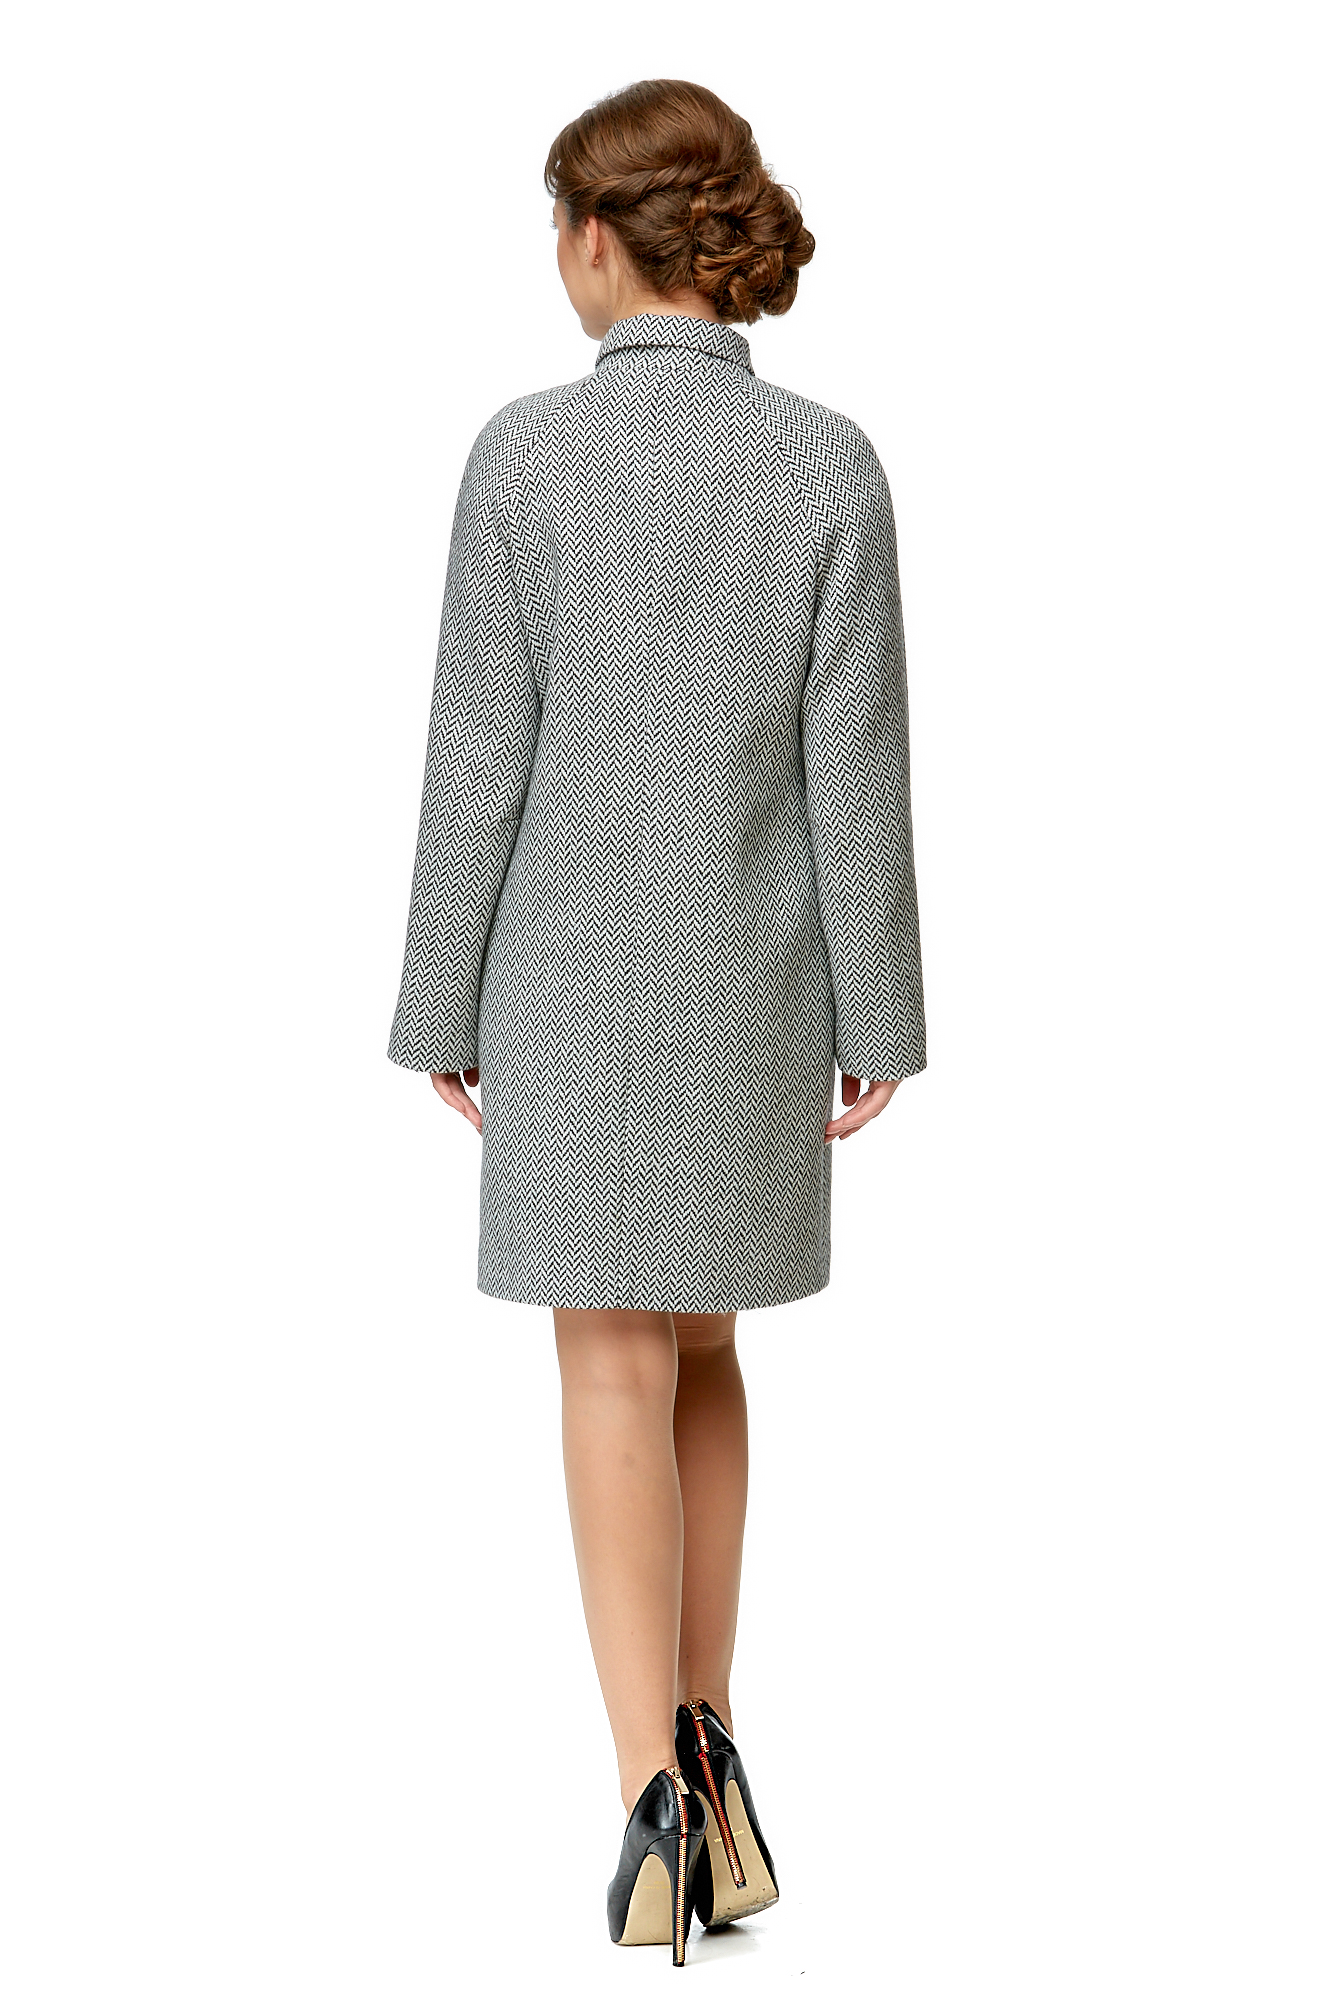 Женское пальто из текстиля с воротником 8000959-3